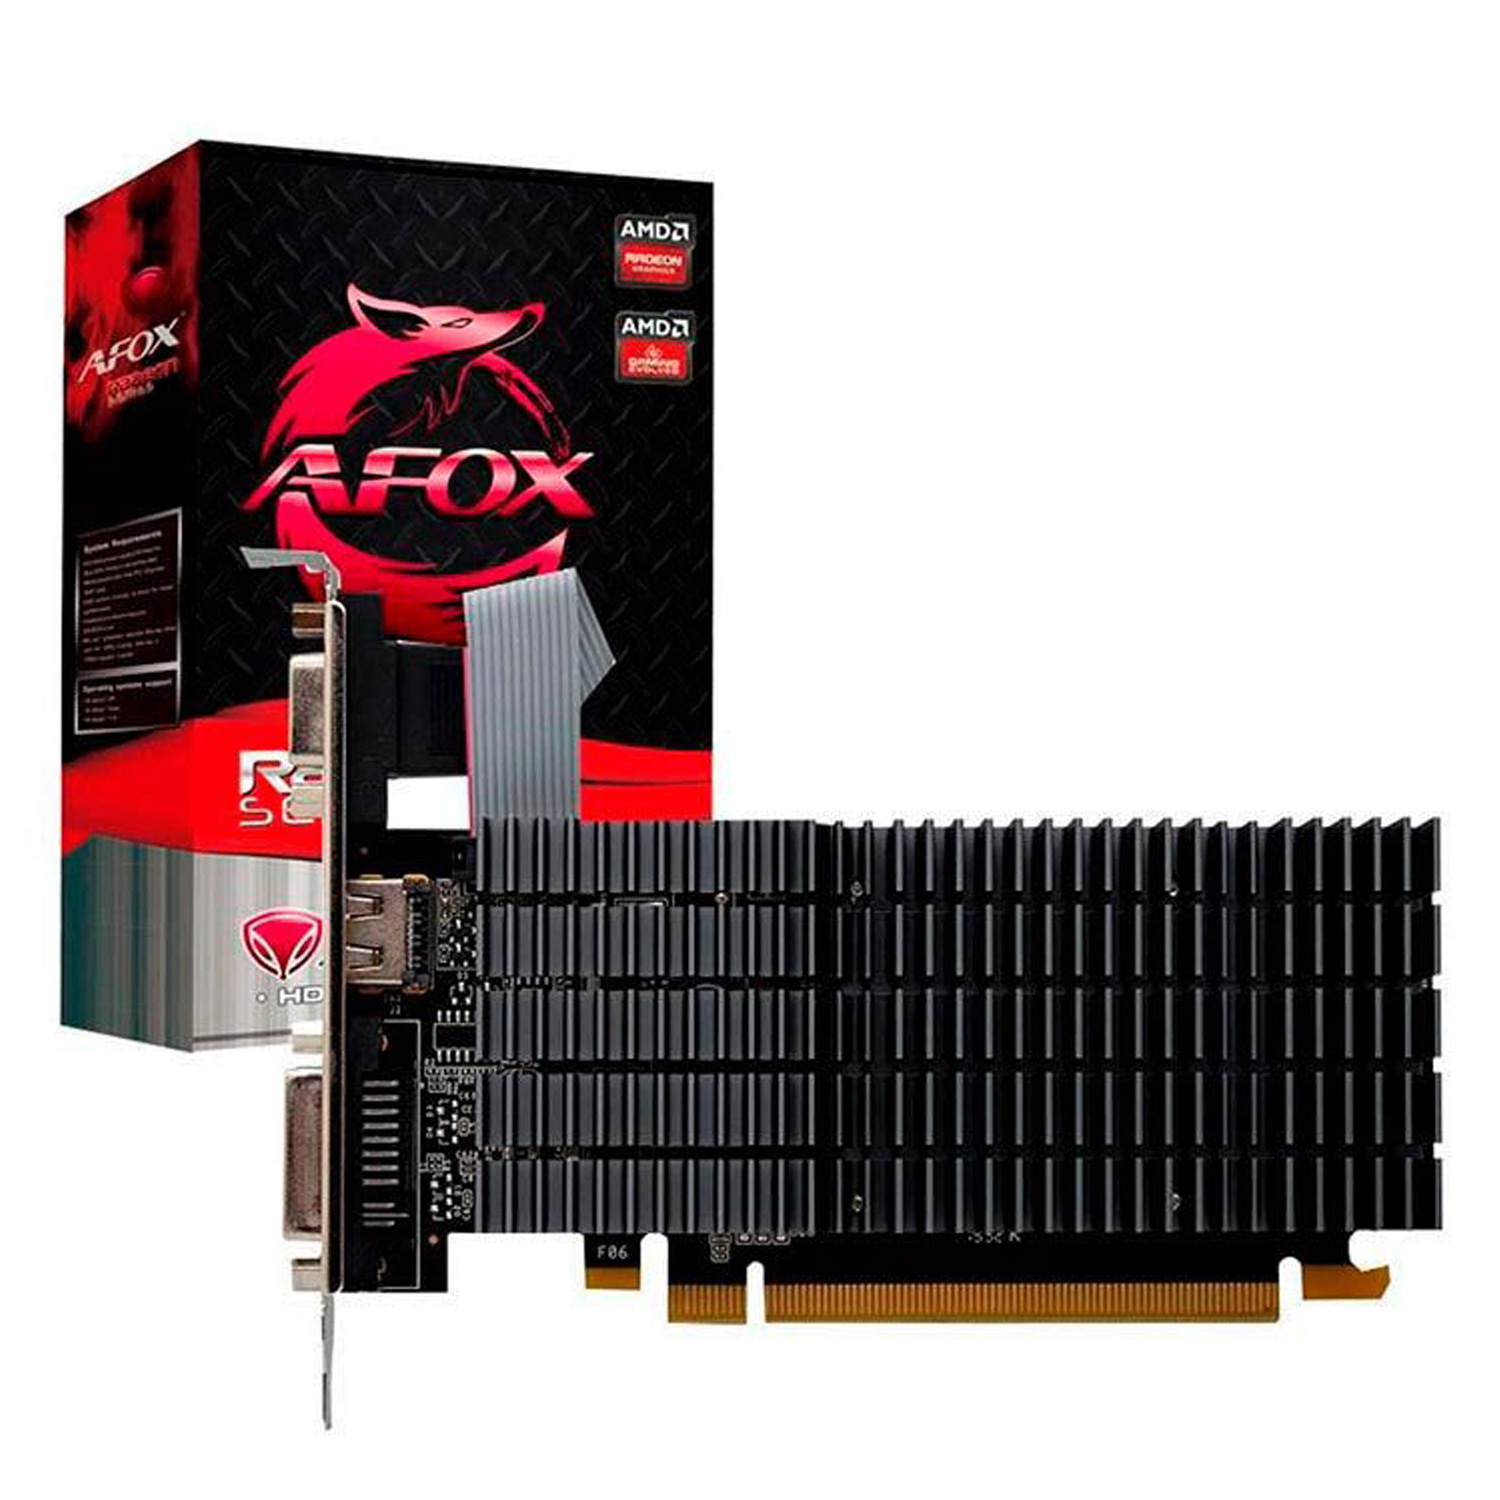 Placa de Vídeo Afox AMD Radeon R5-220 2GB DDR3 - AFR5220-2048D3L5-V2